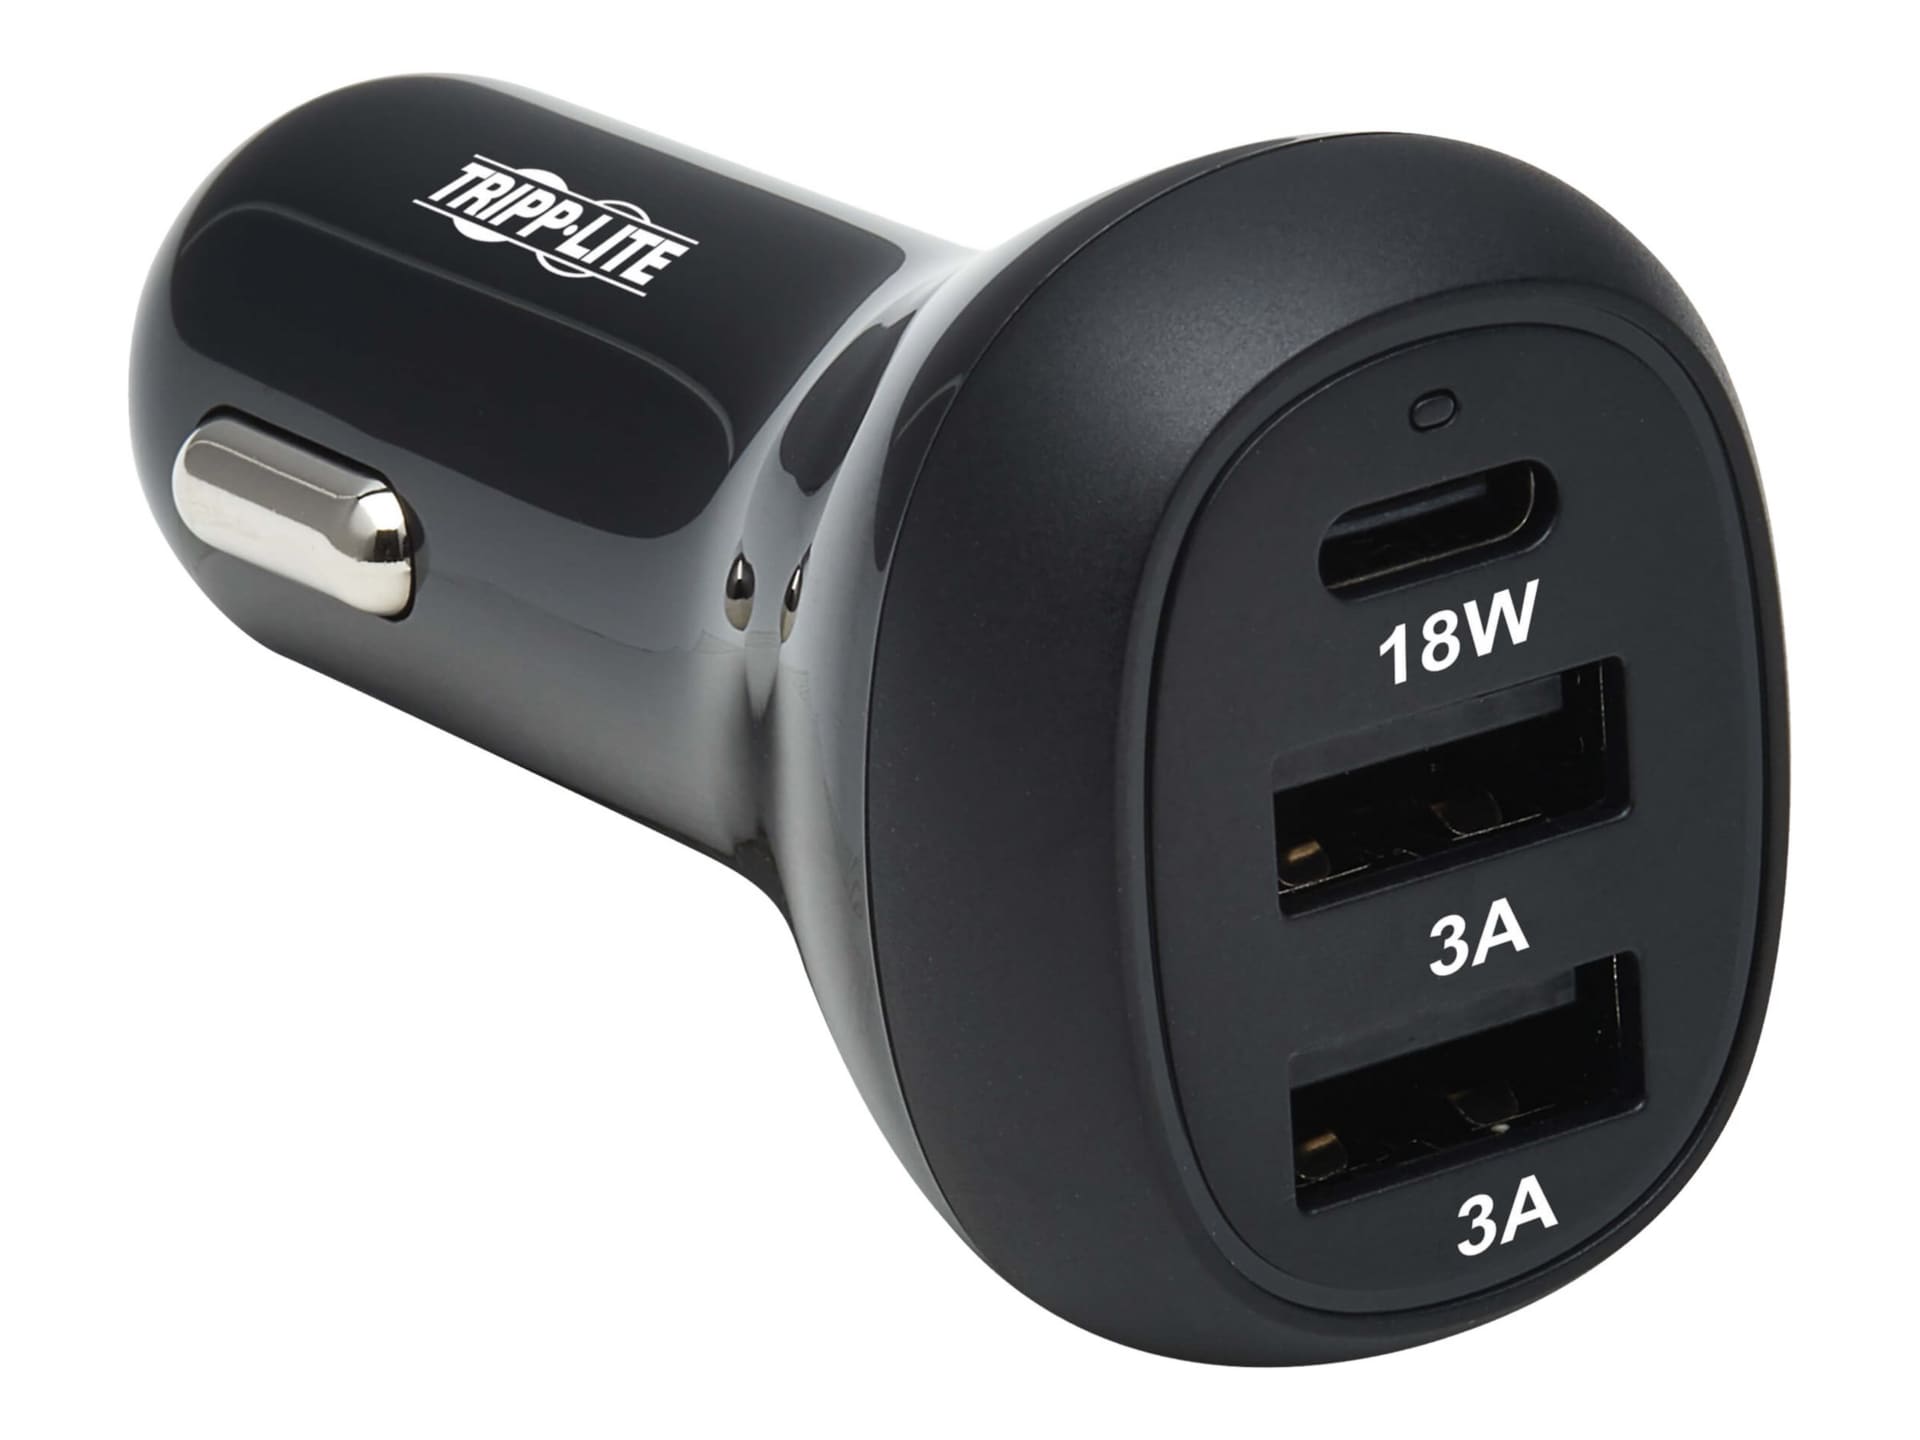 C40 Type-C + Dual USB QC3.0 Chargeur de voiture Bluetooth Adaptateur  d'appel mains libres Lecteur de musique MP3 de voiture